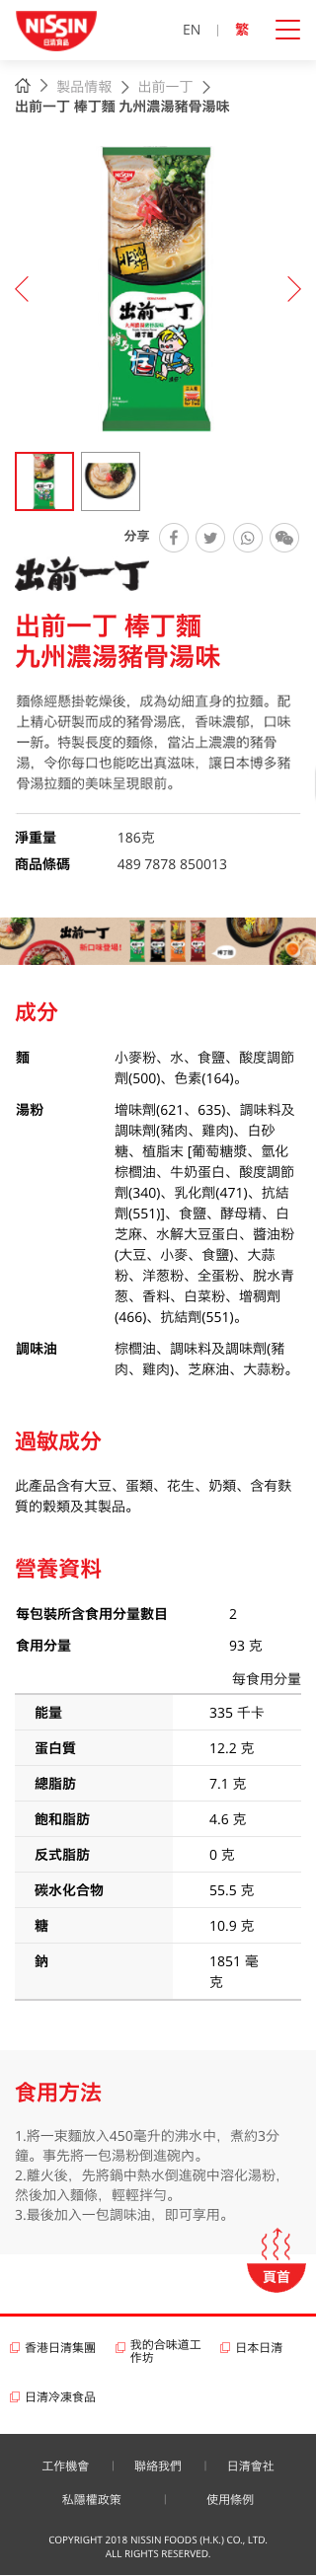 Nissin Foods HK website screenshot for mobile version 5 of 5